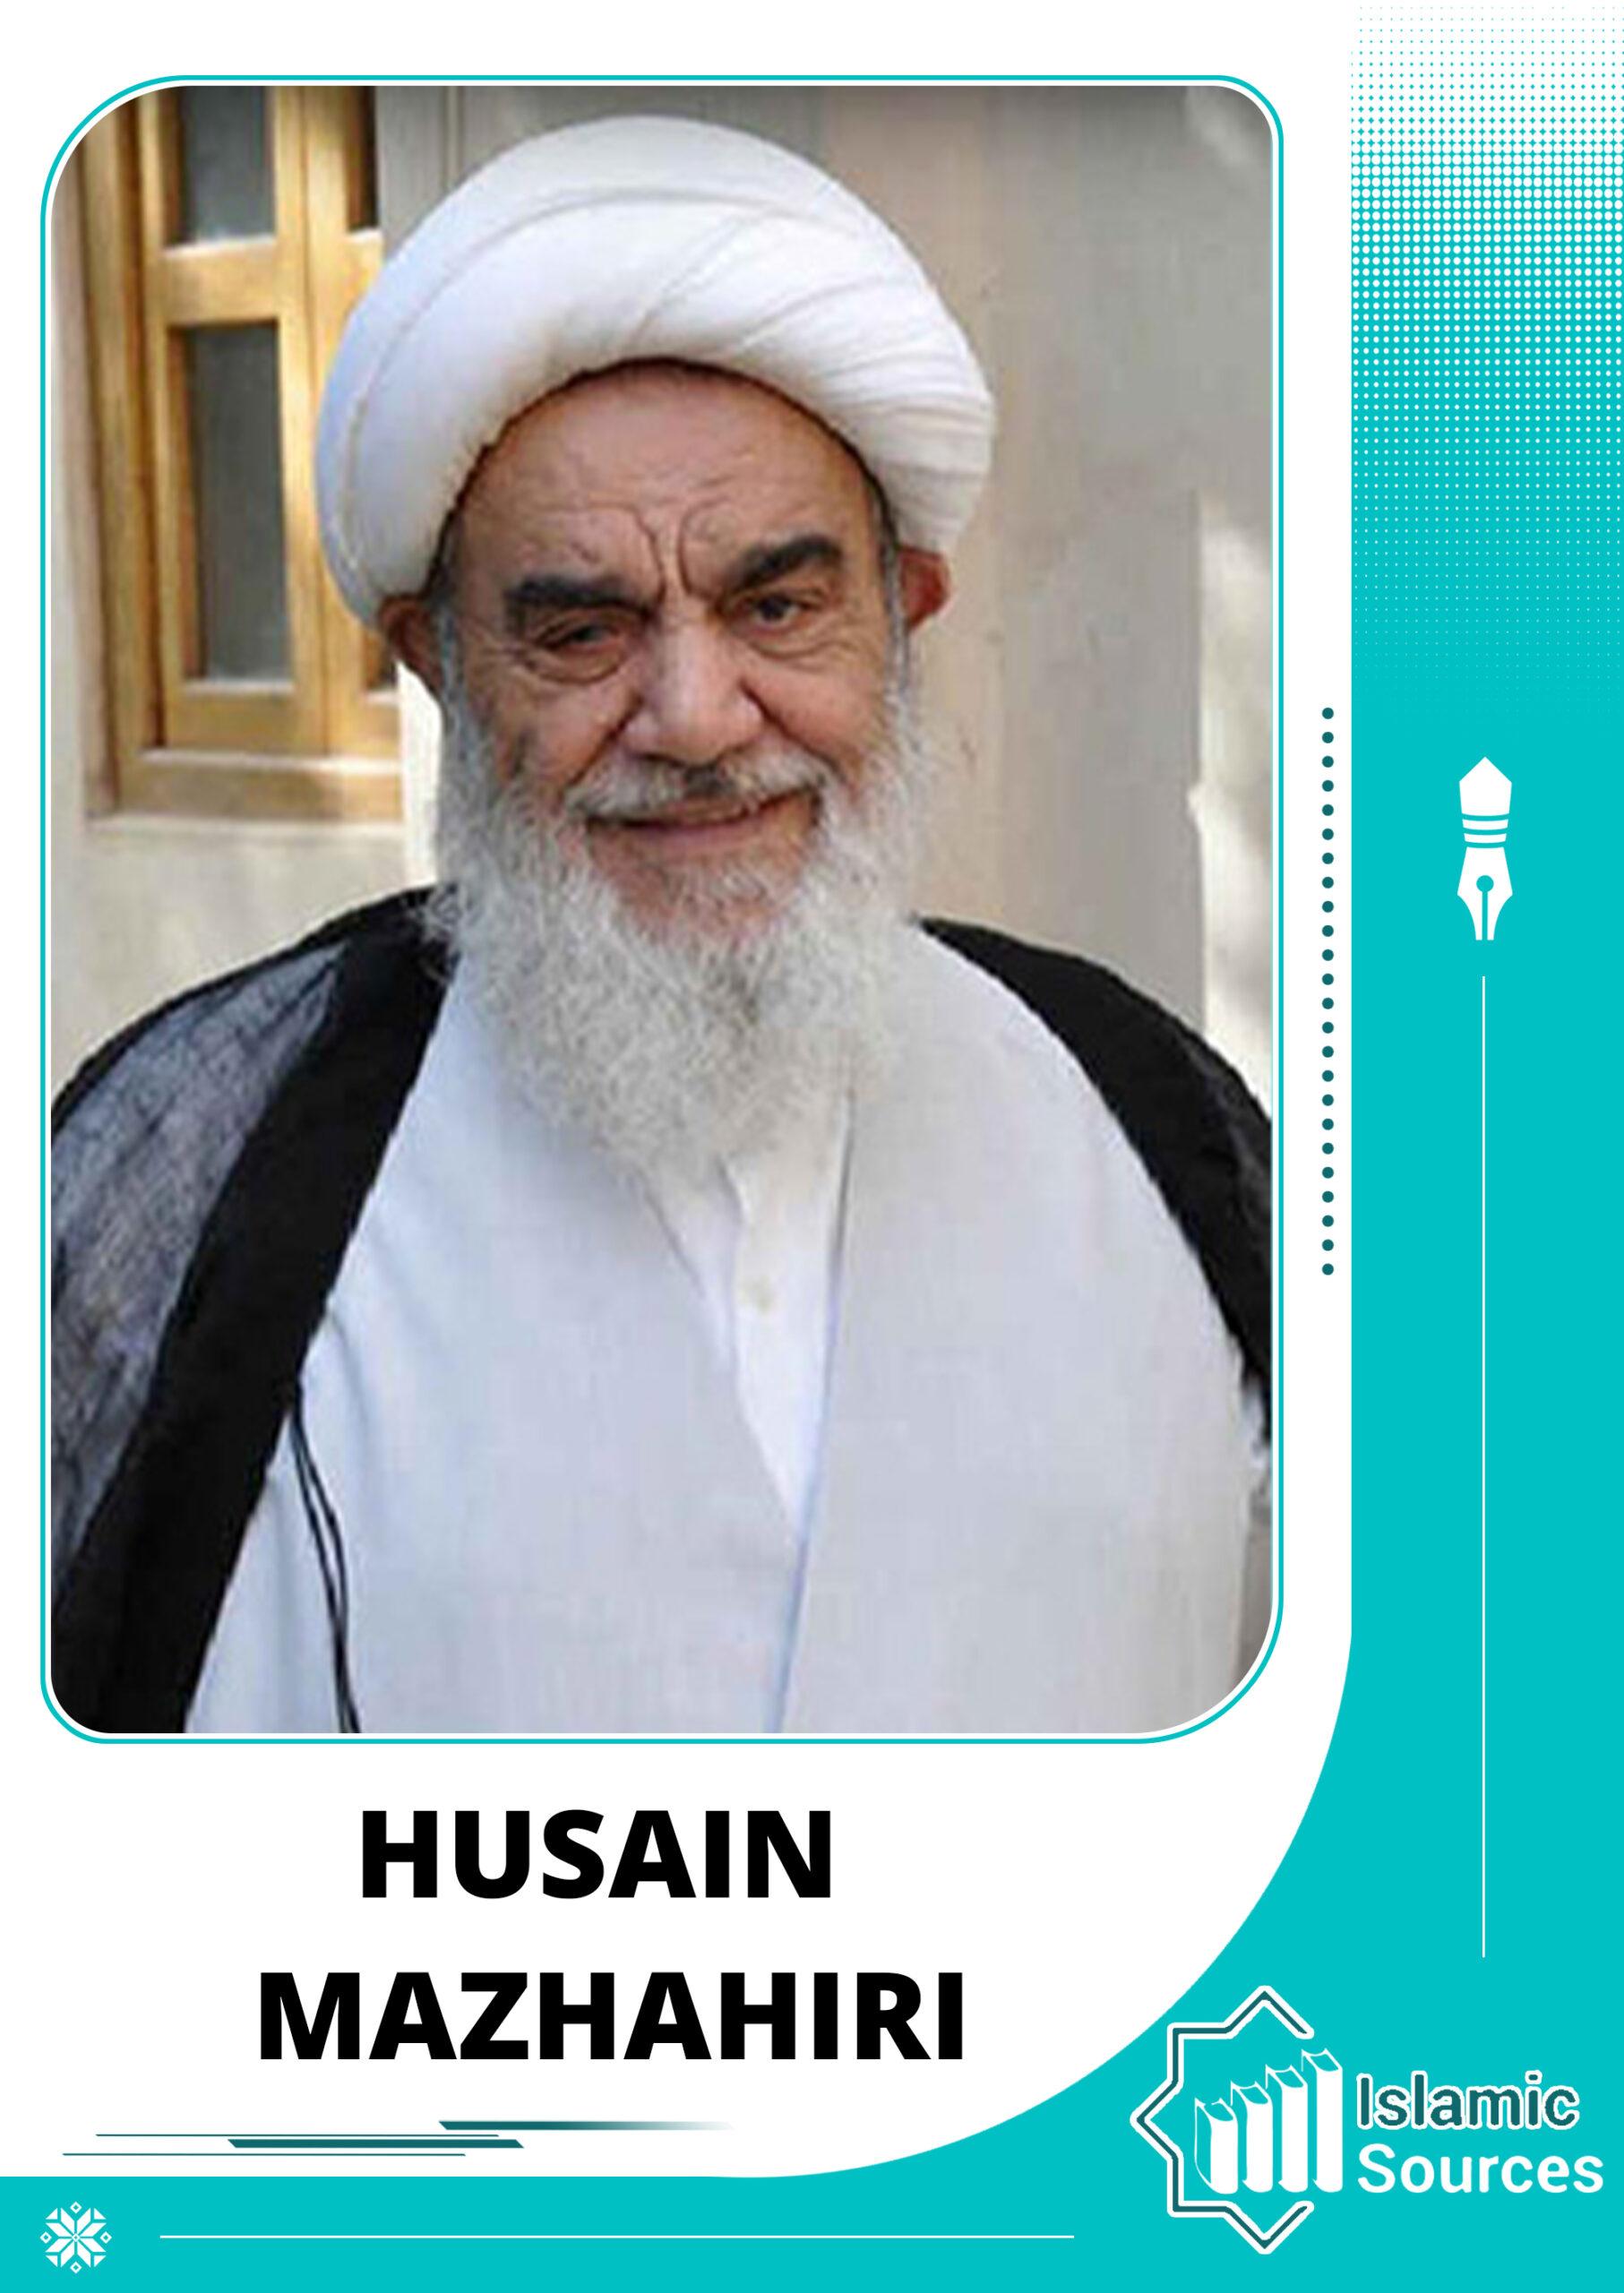 Husain Mazhahiri